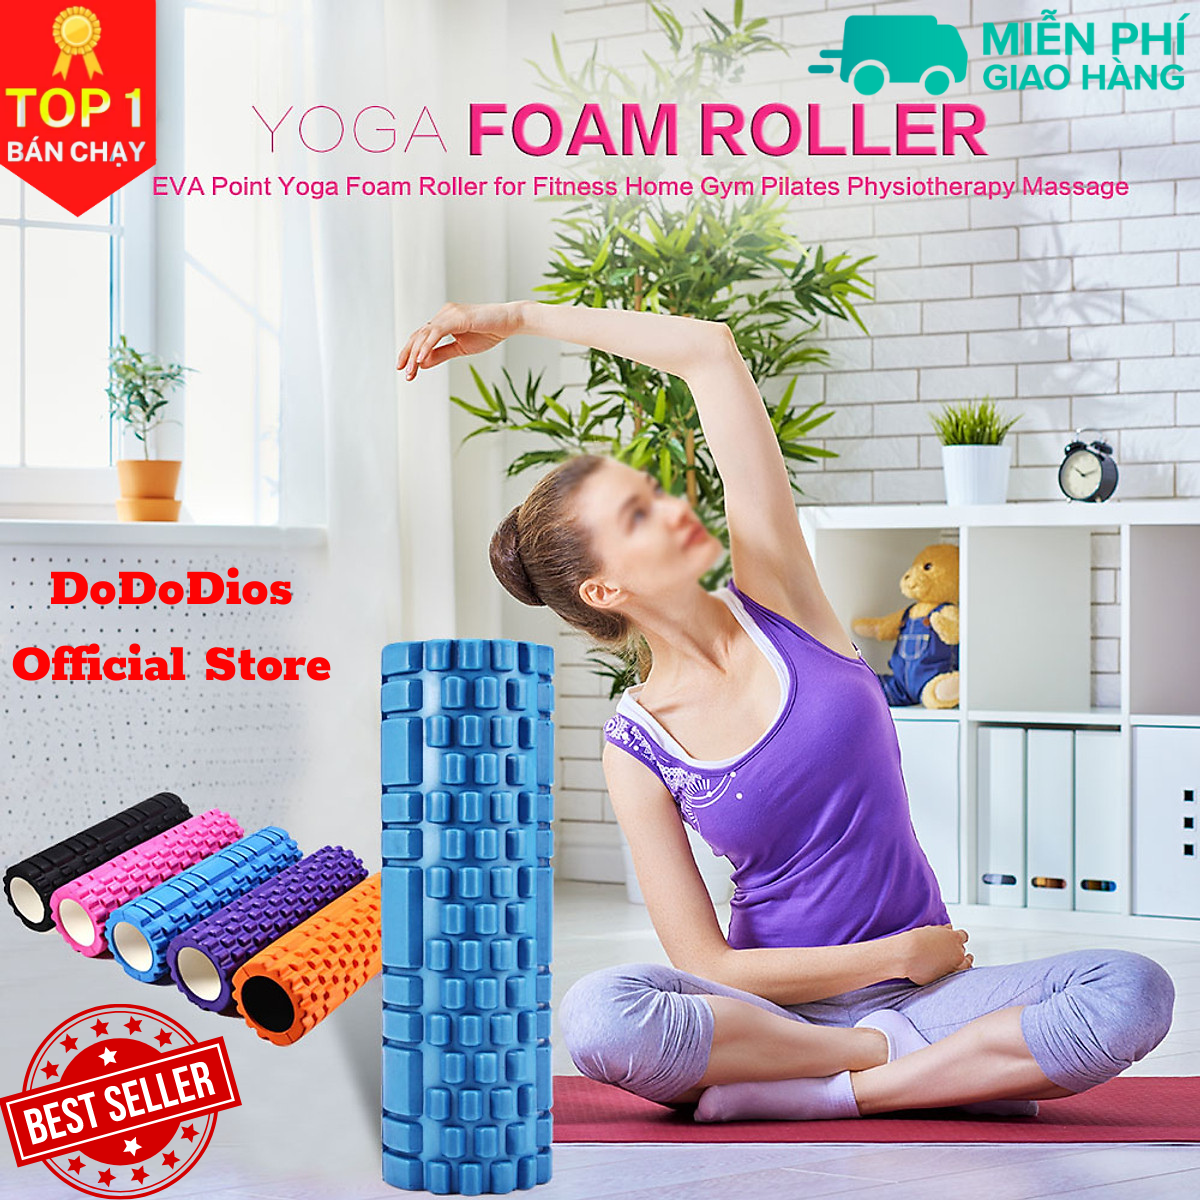 Con lăn Yoga Massage Foarm Roller, ống trụ lăn xốp thể thao giãn cơ có gai roam rollet cao cấp, ống lăn giãn cơ - Chính hãng DoDoDios